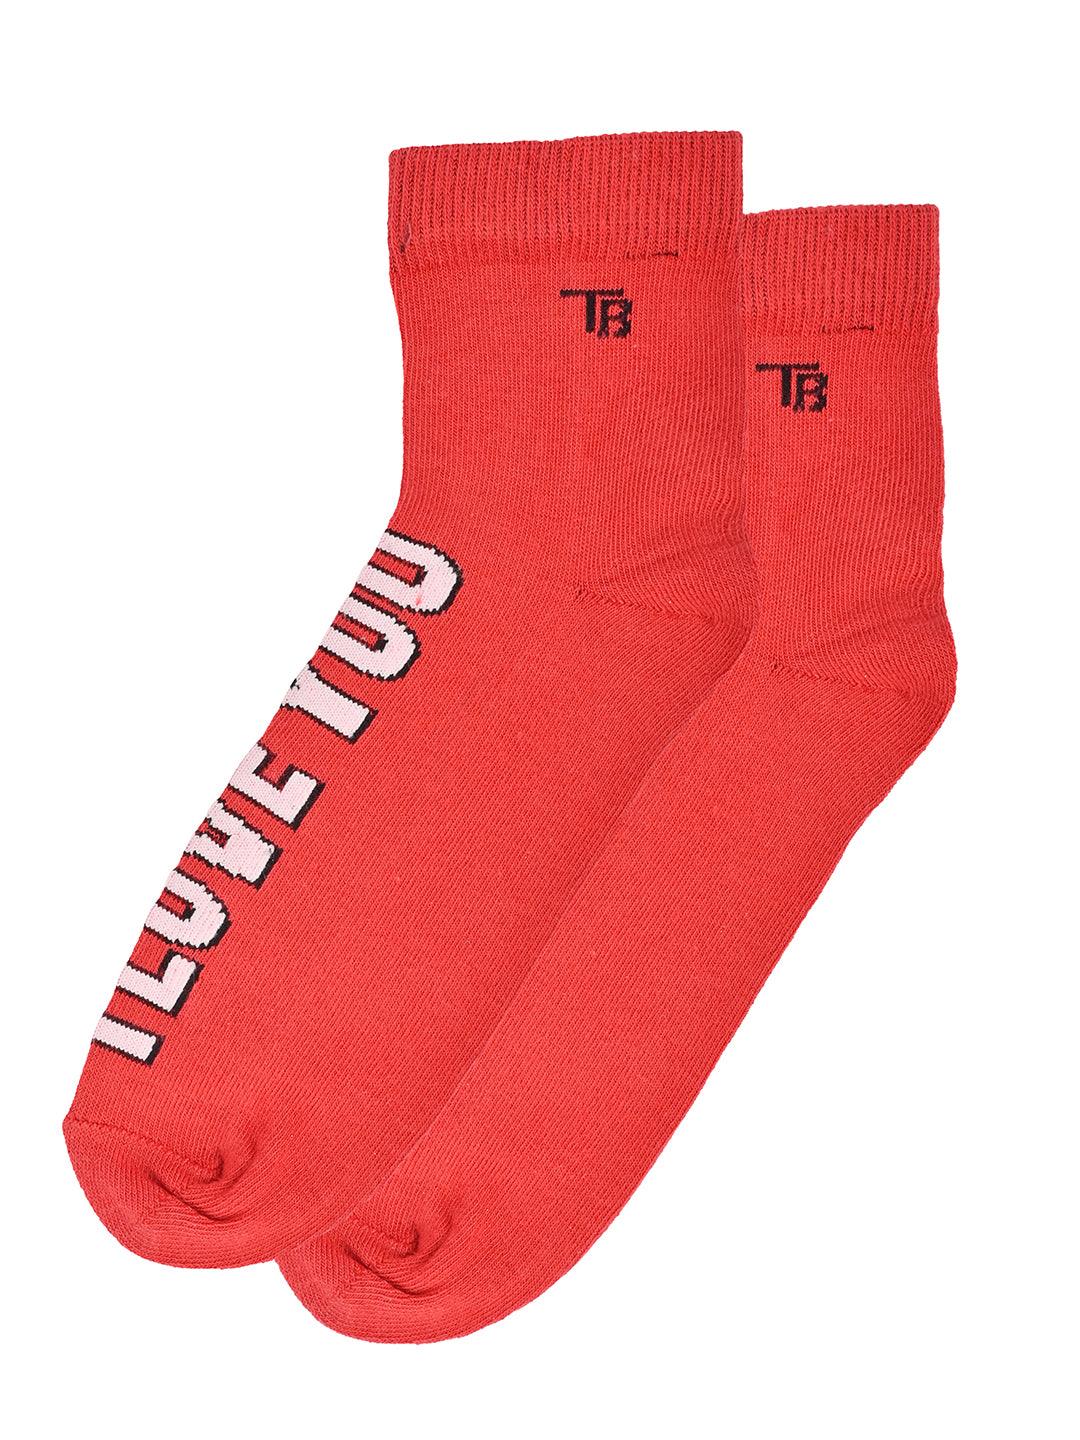 printed red socks